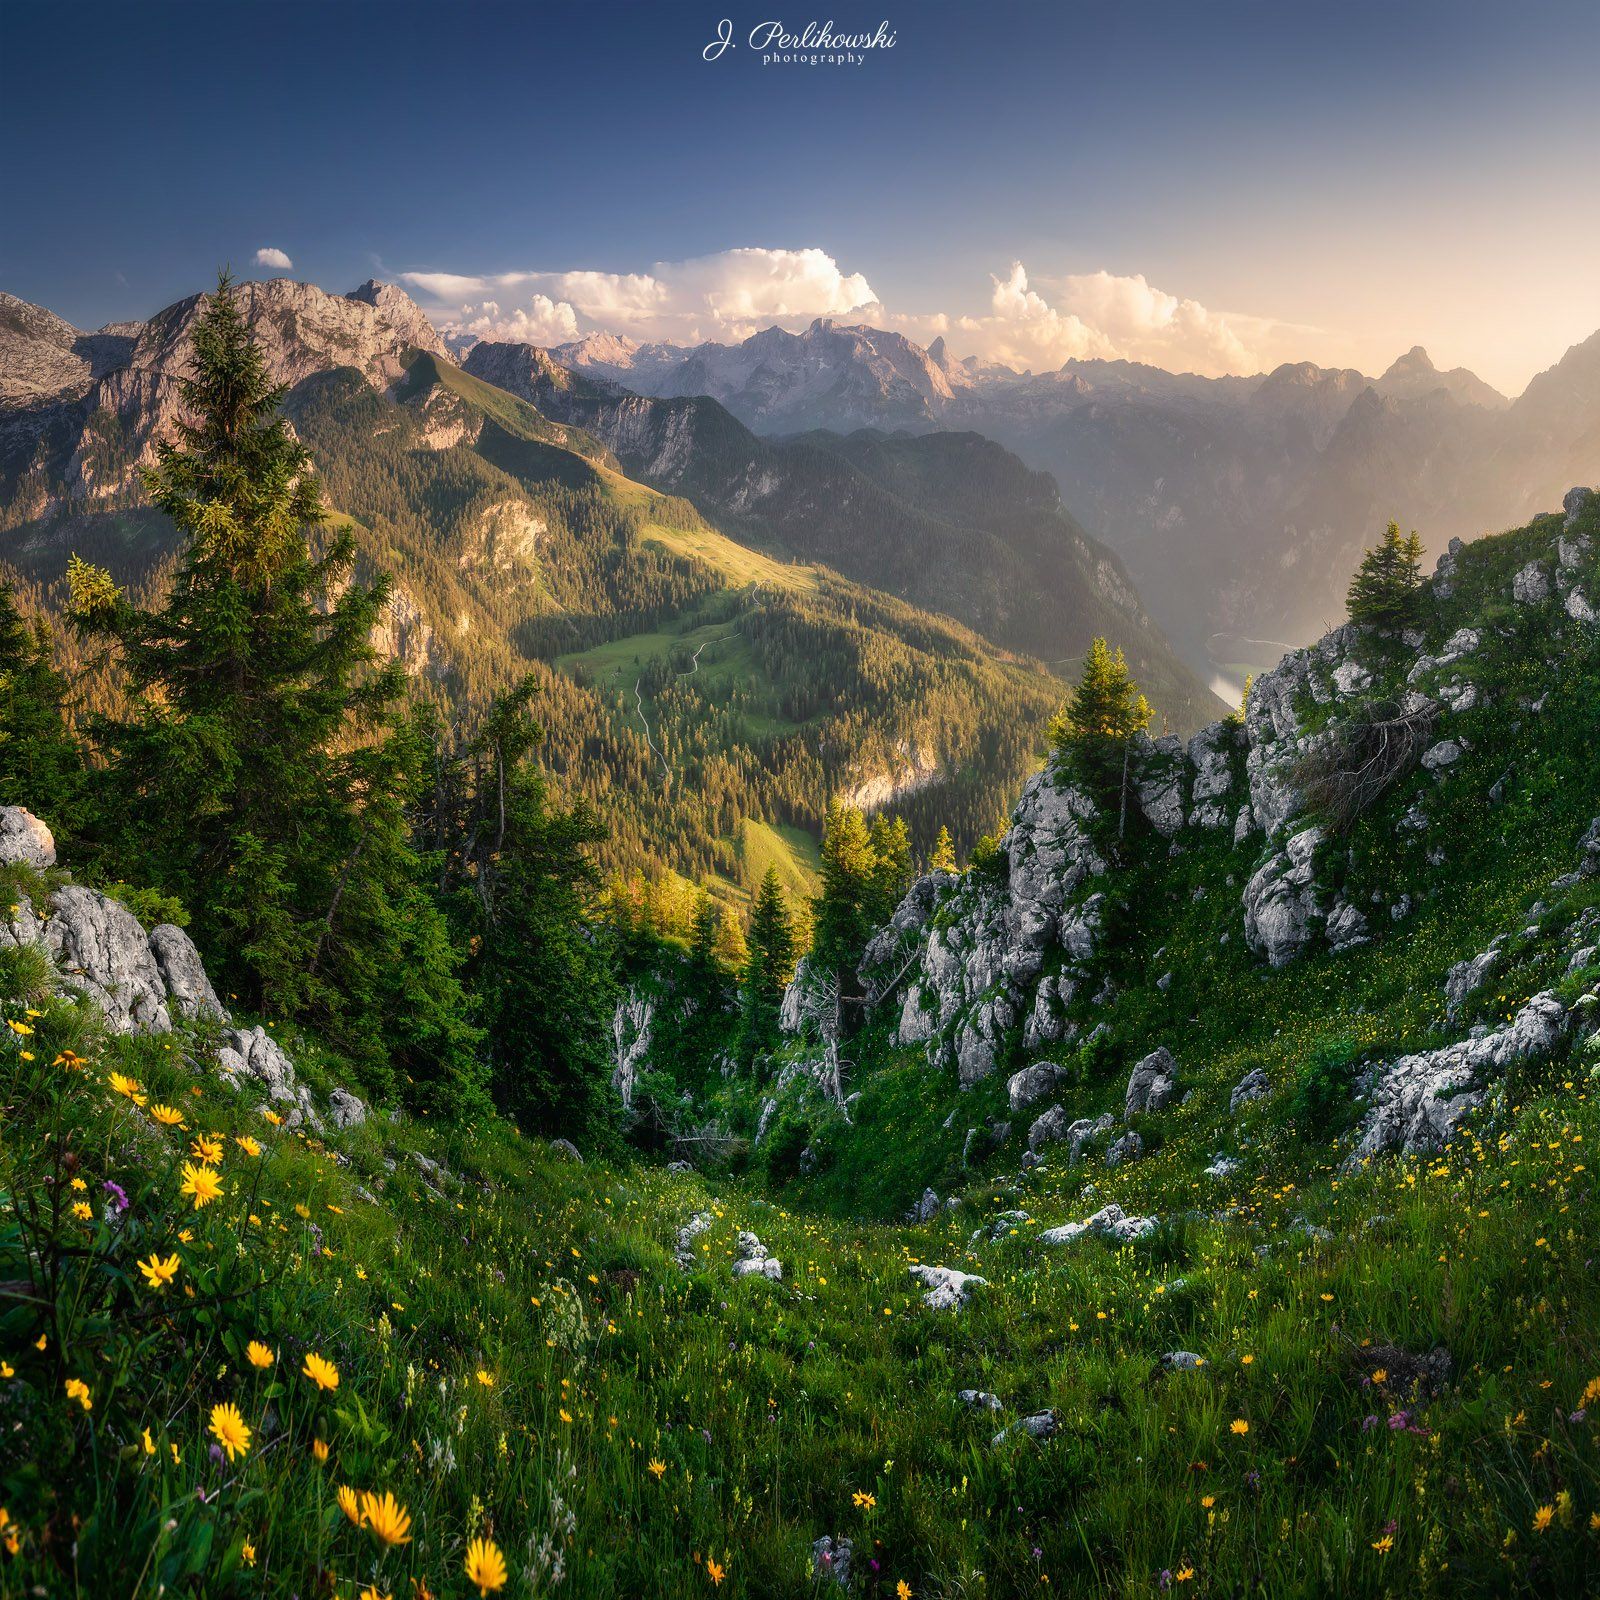 alps, alp, mountain,mountains,europe,summer, Jakub Perlikowski